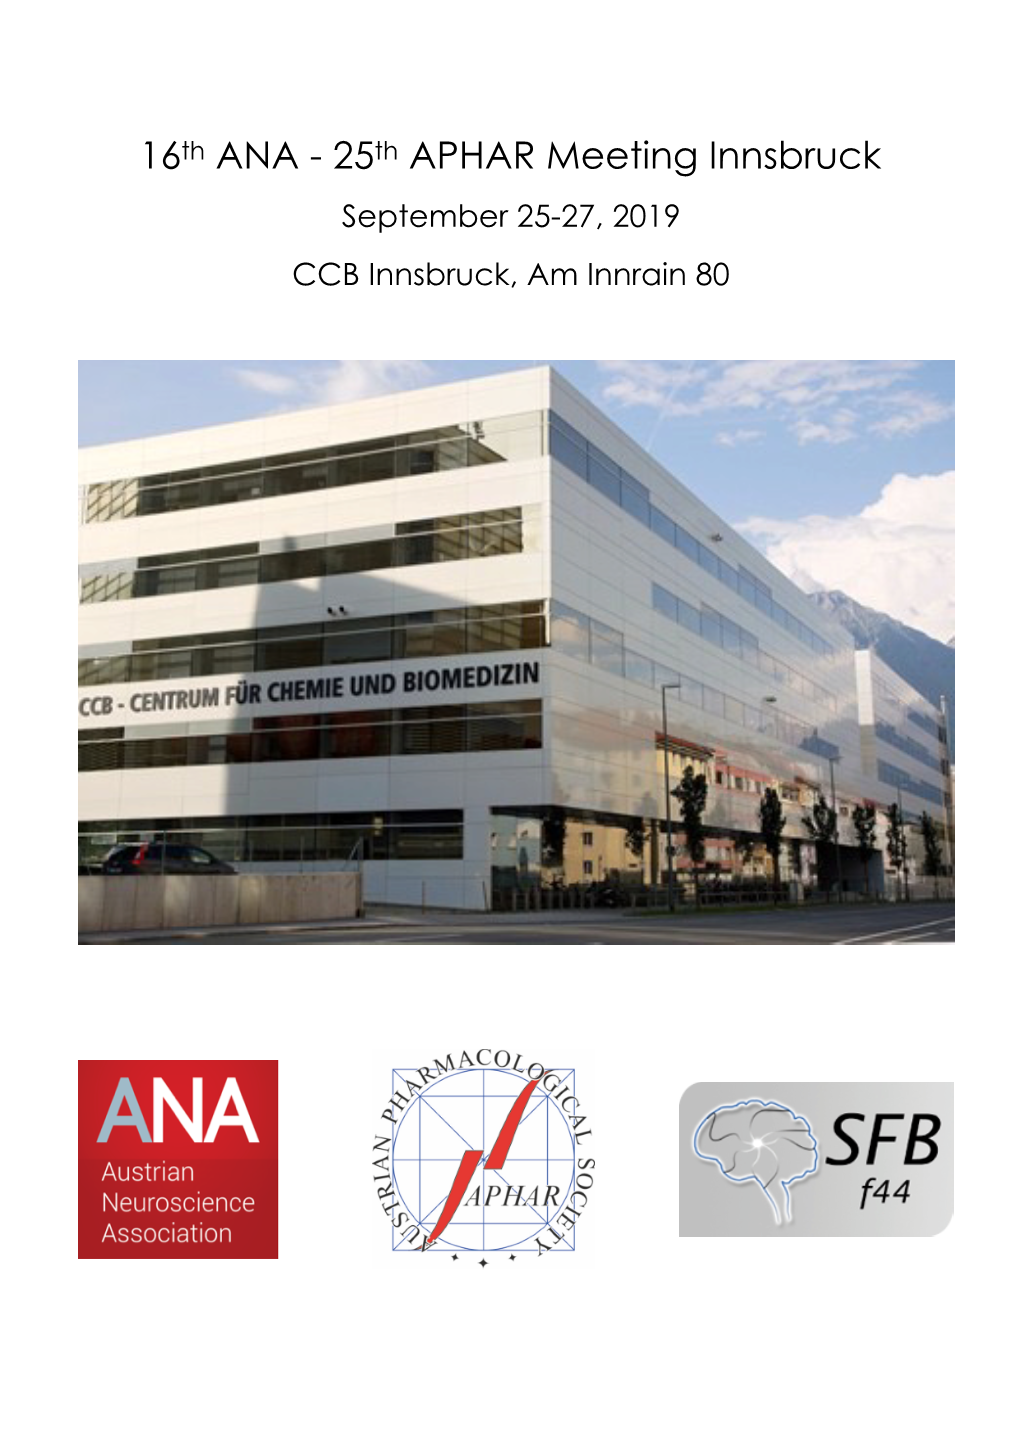 16Th ANA - 25Th APHAR Meeting Innsbruck September 25-27, 2019